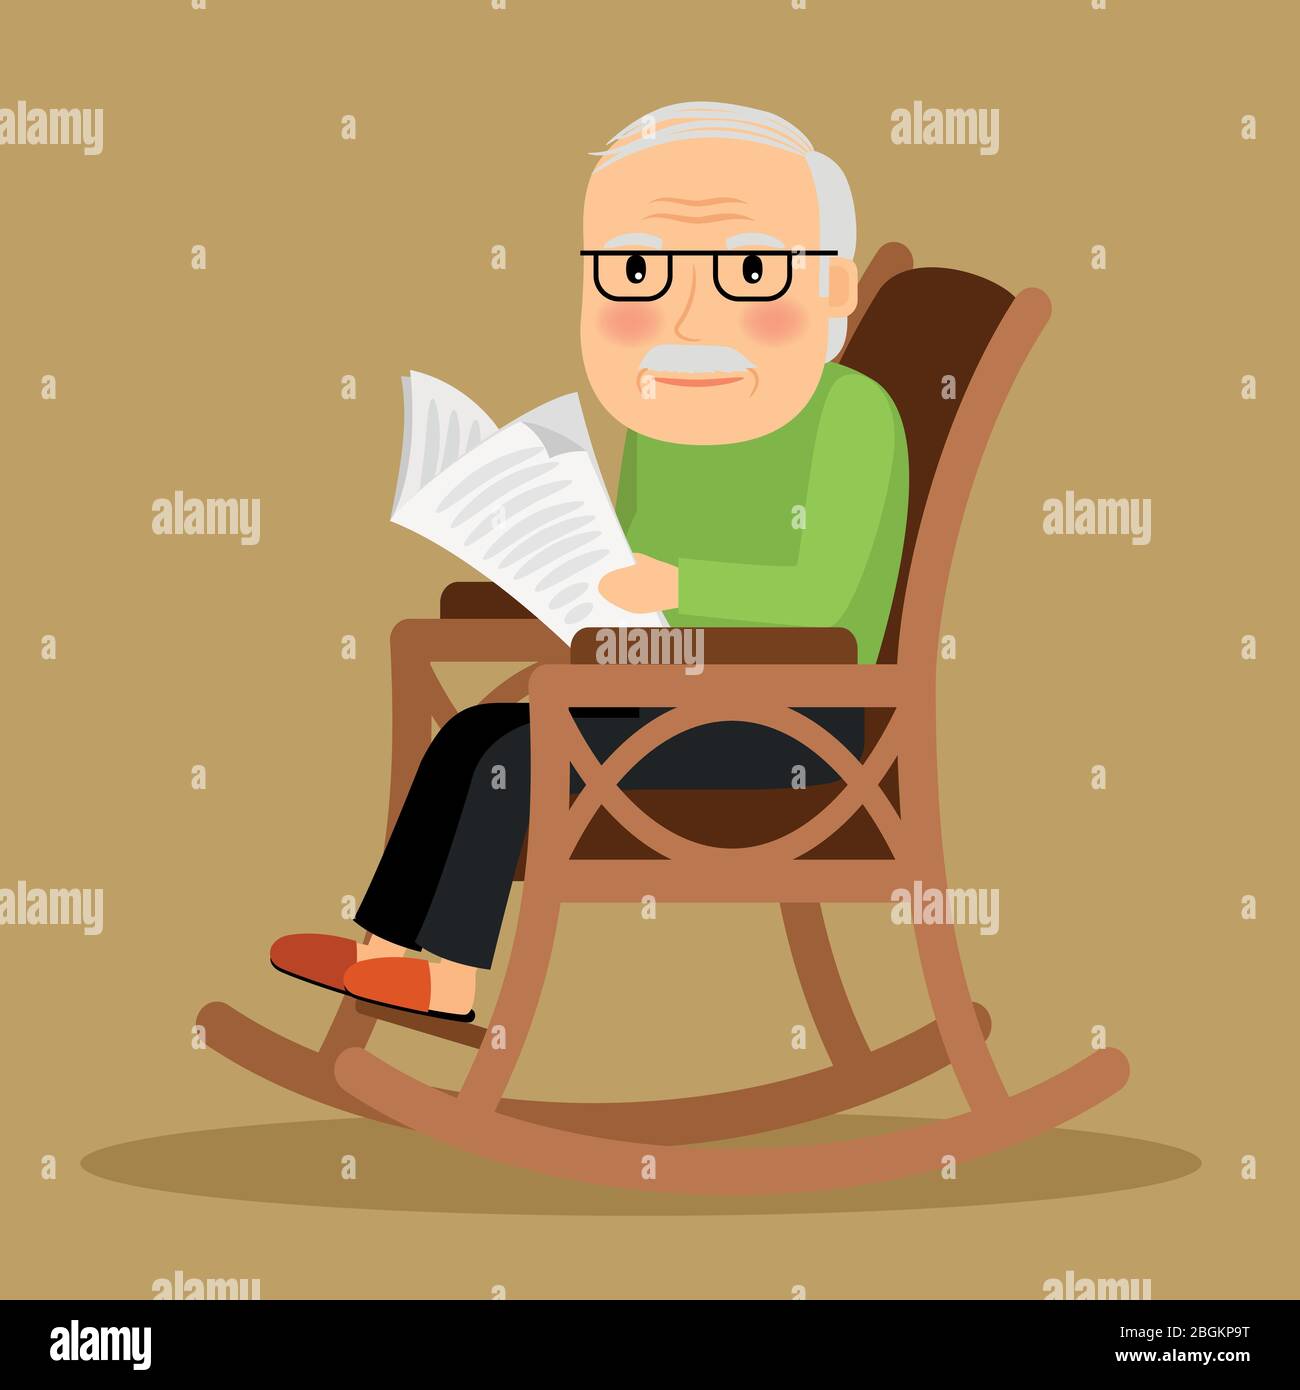 Alter Mann sitzt in Schaukelstuhl und liest Zeitung. Vektorgrafik. Stock Vektor